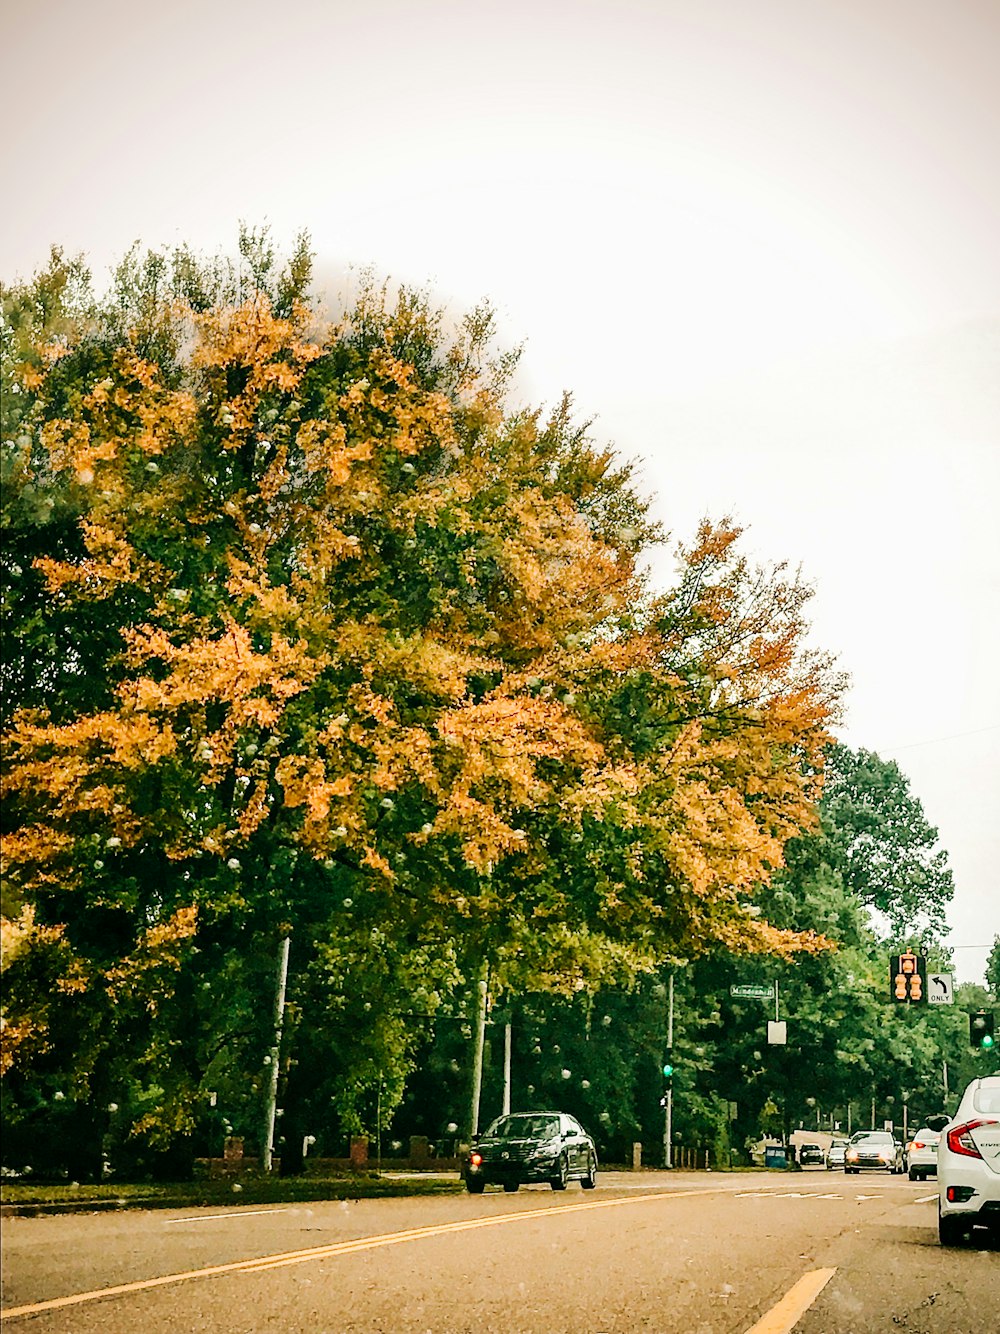 Grüne und gelbe Bäume in der Nähe von Autos auf der Straße tagsüber